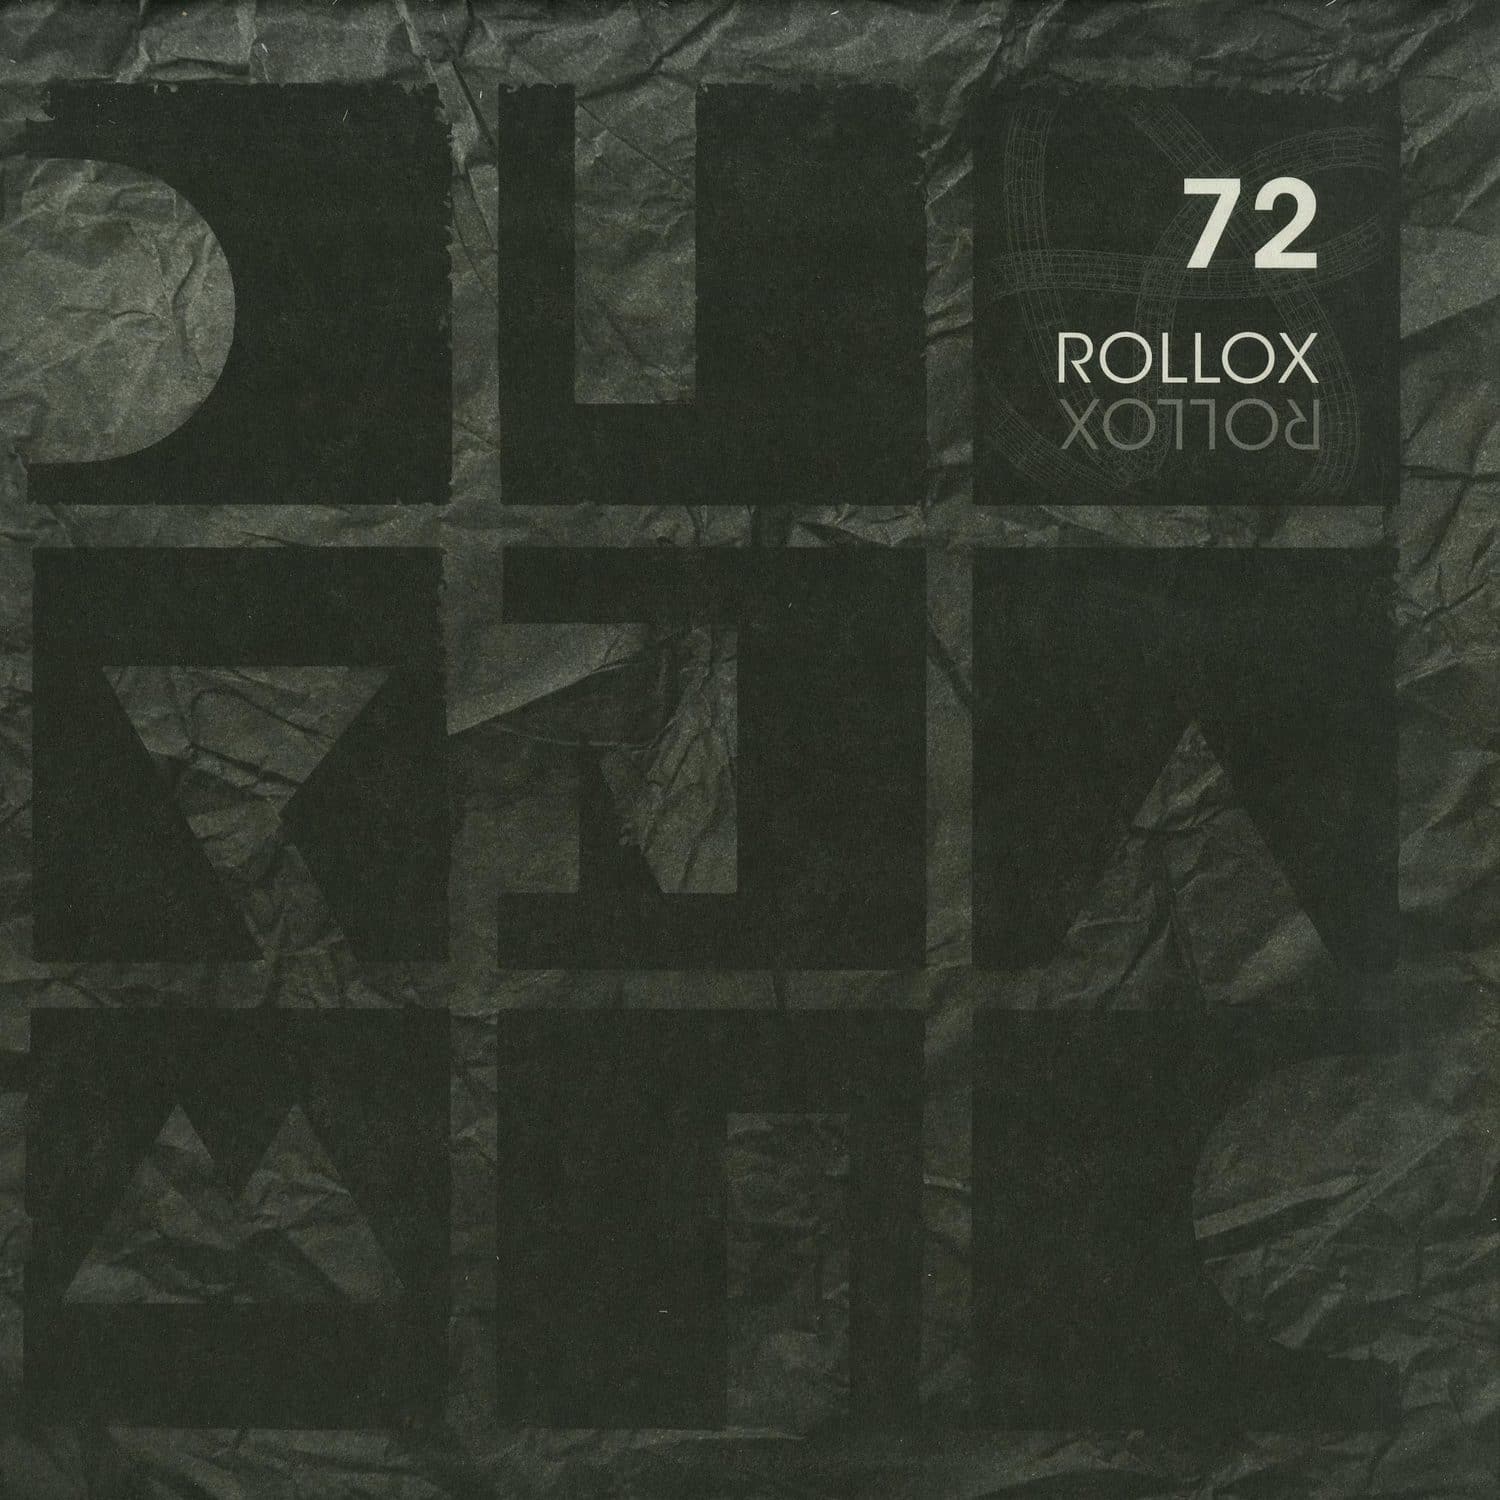 Adriatique - ROLLOX EP 